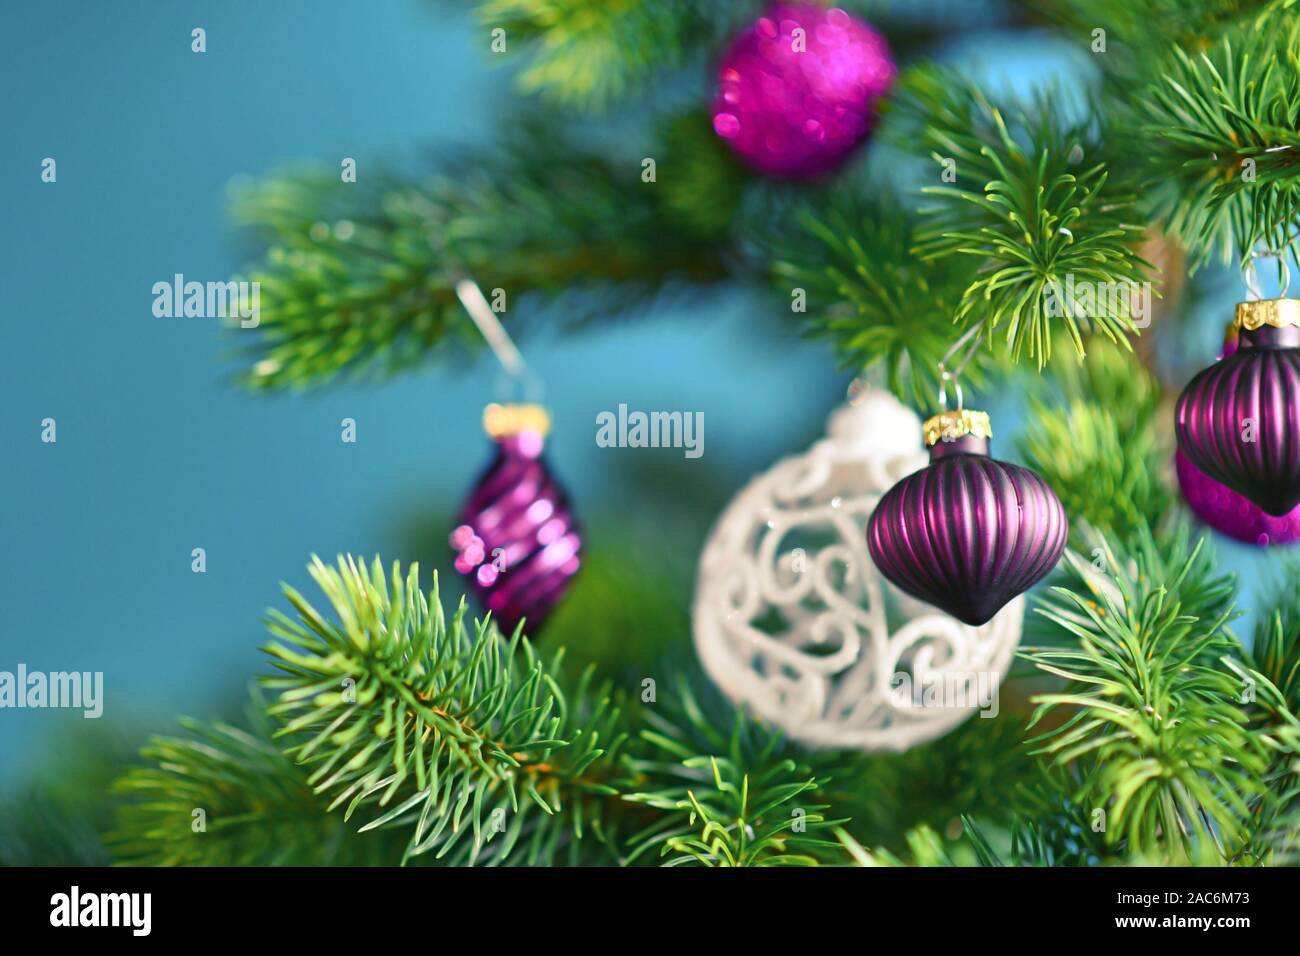 In der Nähe von schönen lila Glas baum Christbaumkugel mit geschmückten Weihnachtsbaum mit anderen saisonalen Baumschmuck auf blauem Hintergrund Stockfoto